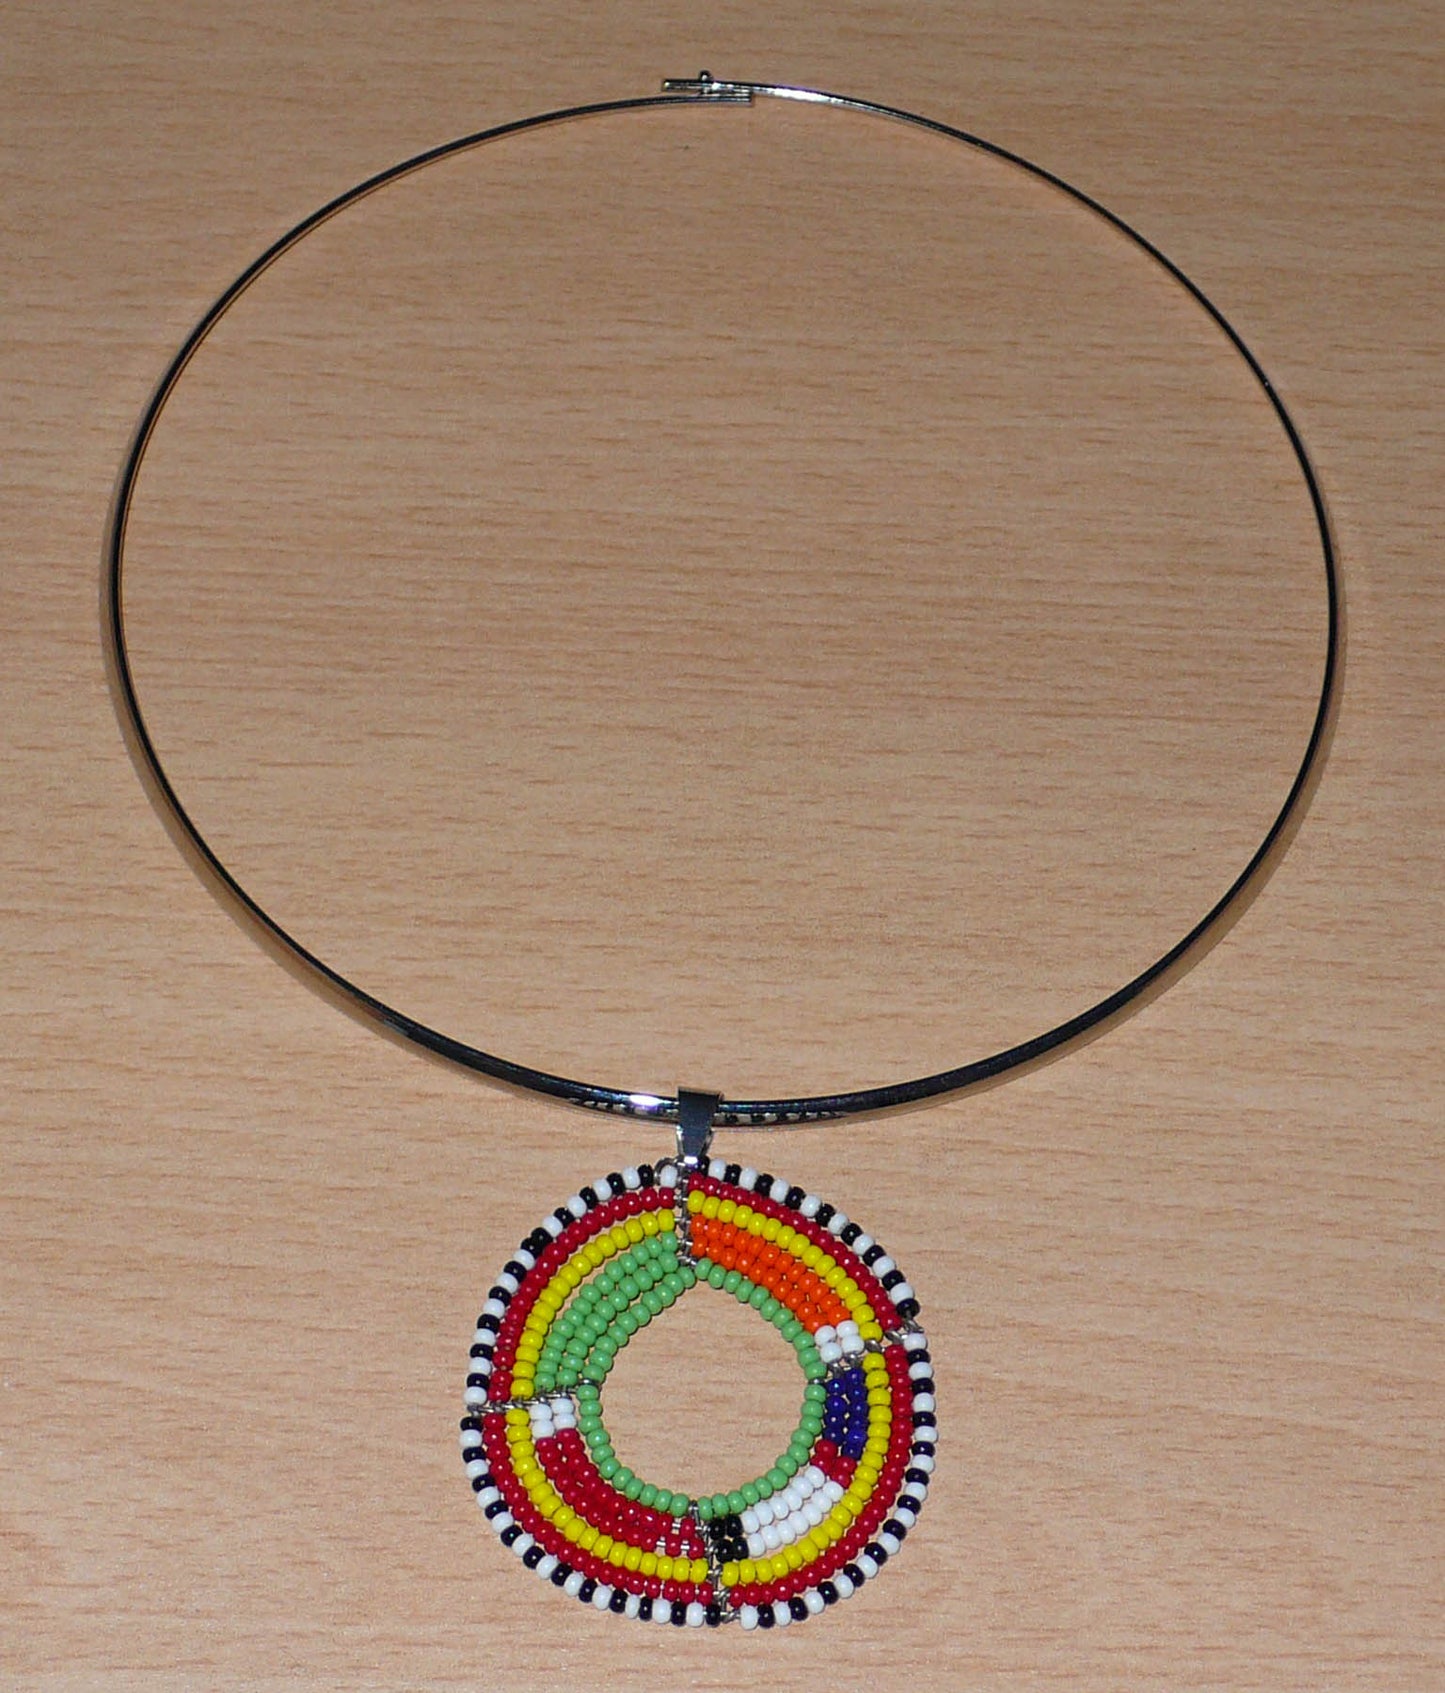 Collier africain composé d'un ras de cou en laiton argenté orné d'un médaillon Massai en perles de rocaille vertes et multicolores. Le collier mesure 19 cm de long (de la nuque jusqu'à la base du pendentif), la circonférence du tour de cou en laiton est de 42,5 cm avec un diamètre de 13,5 cm ; le médaillon mesure 5 cm de long et de large. 